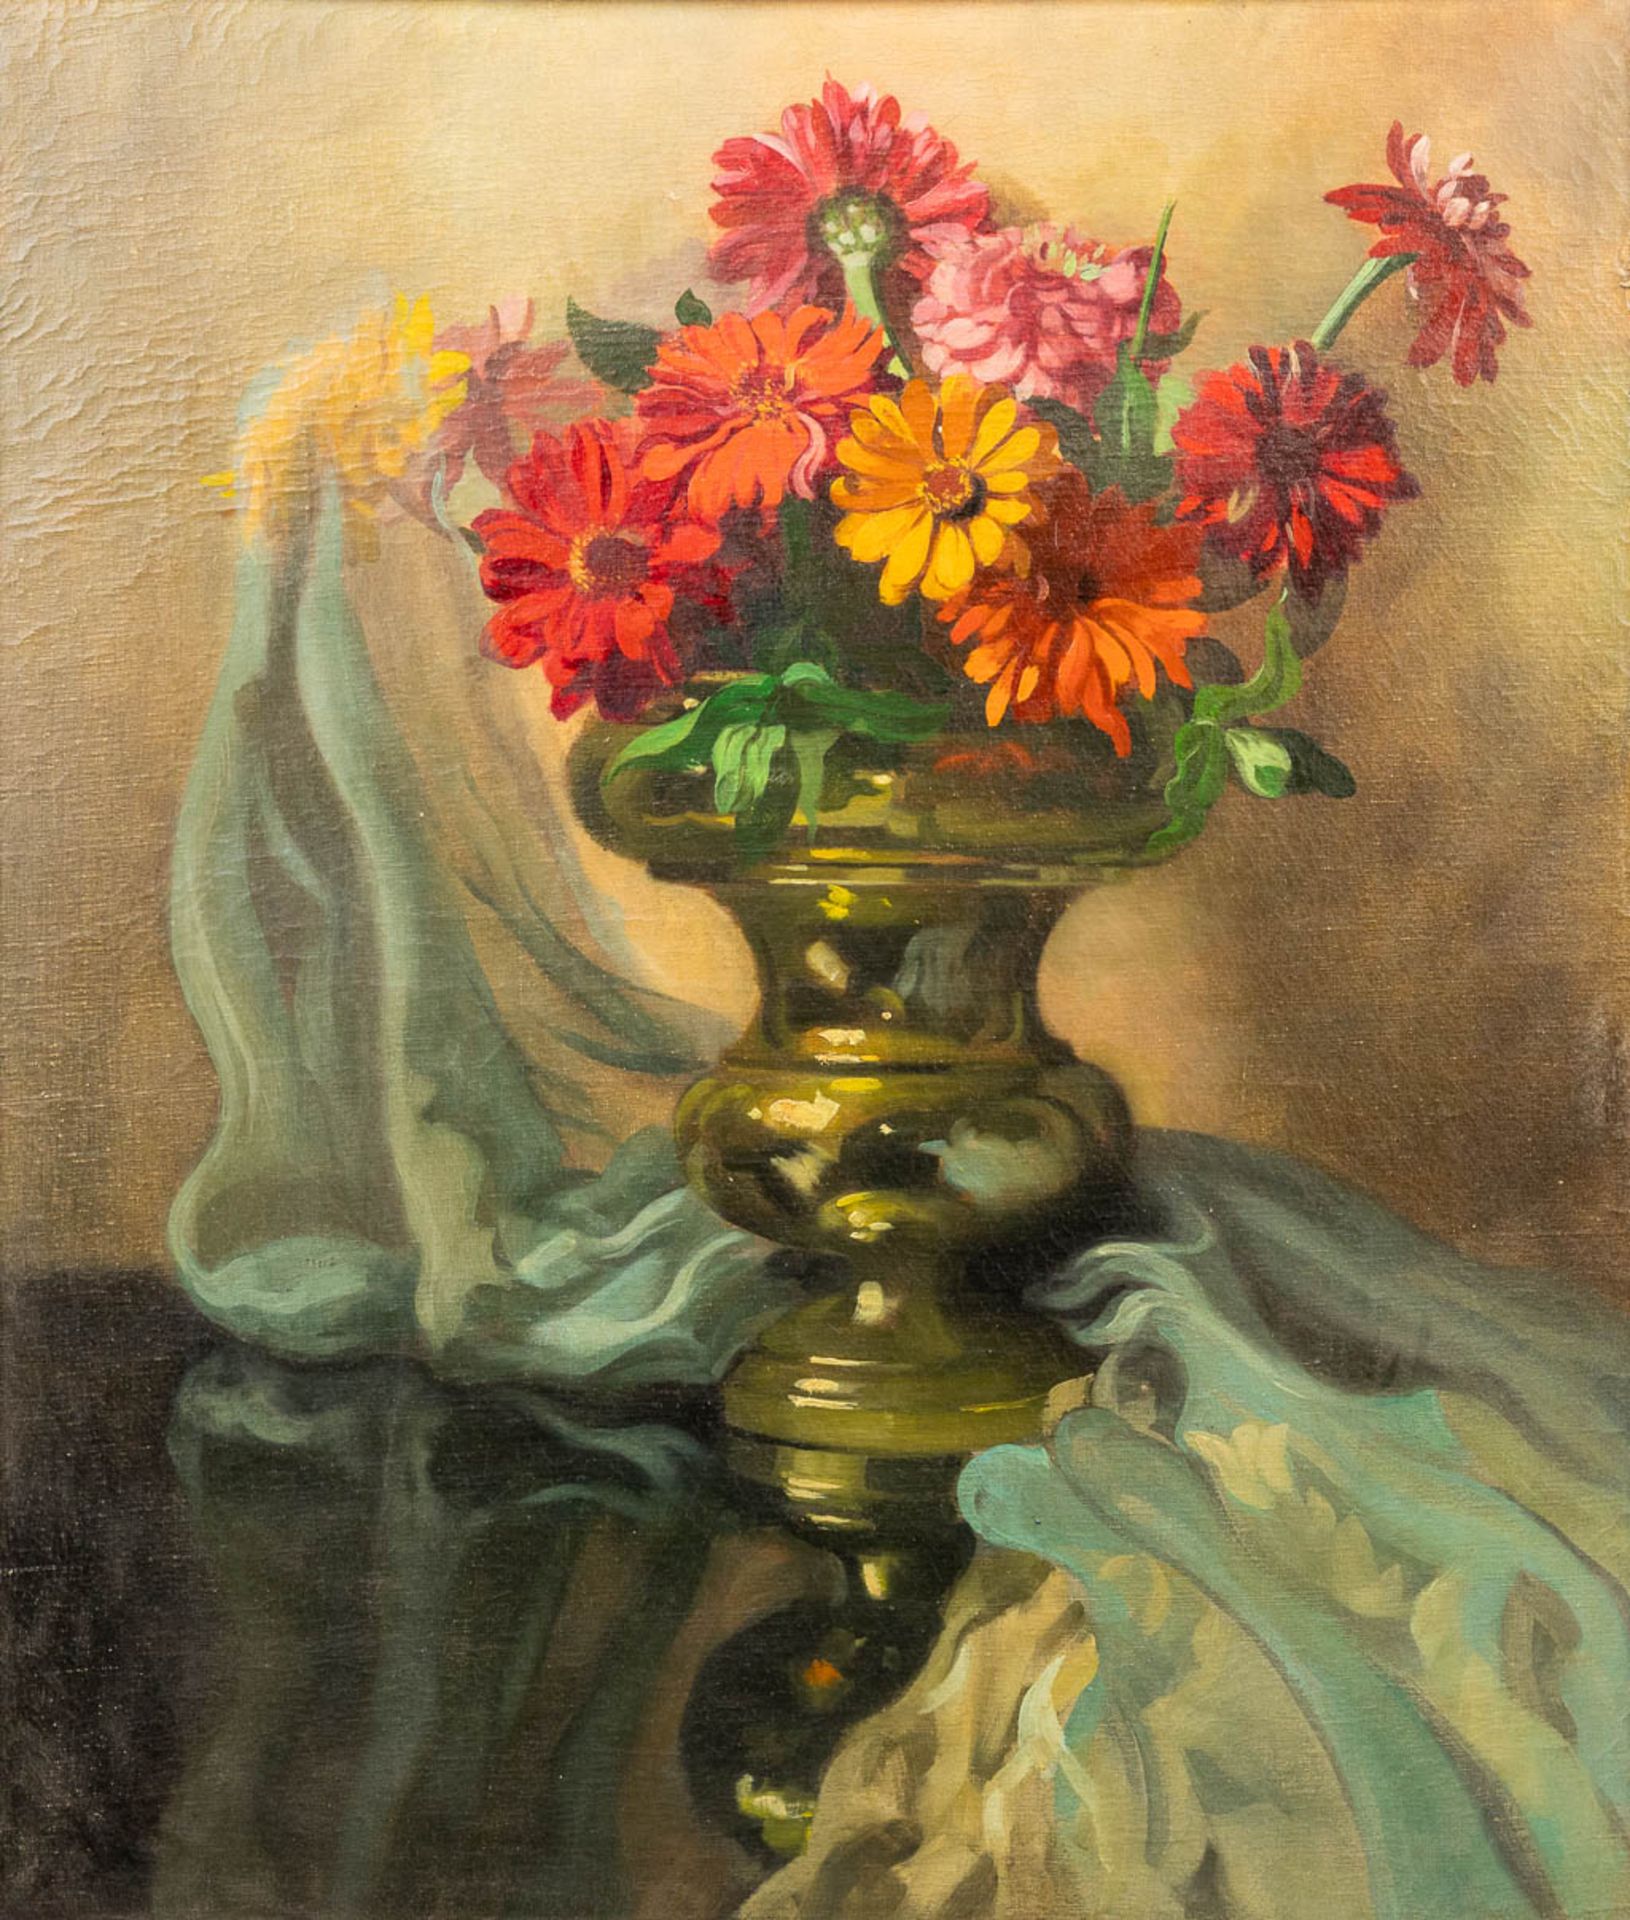 José STORIE (1899-1961) 'Flower Bouquet' a still life painting, oil on canvas. (60 x 70 cm)